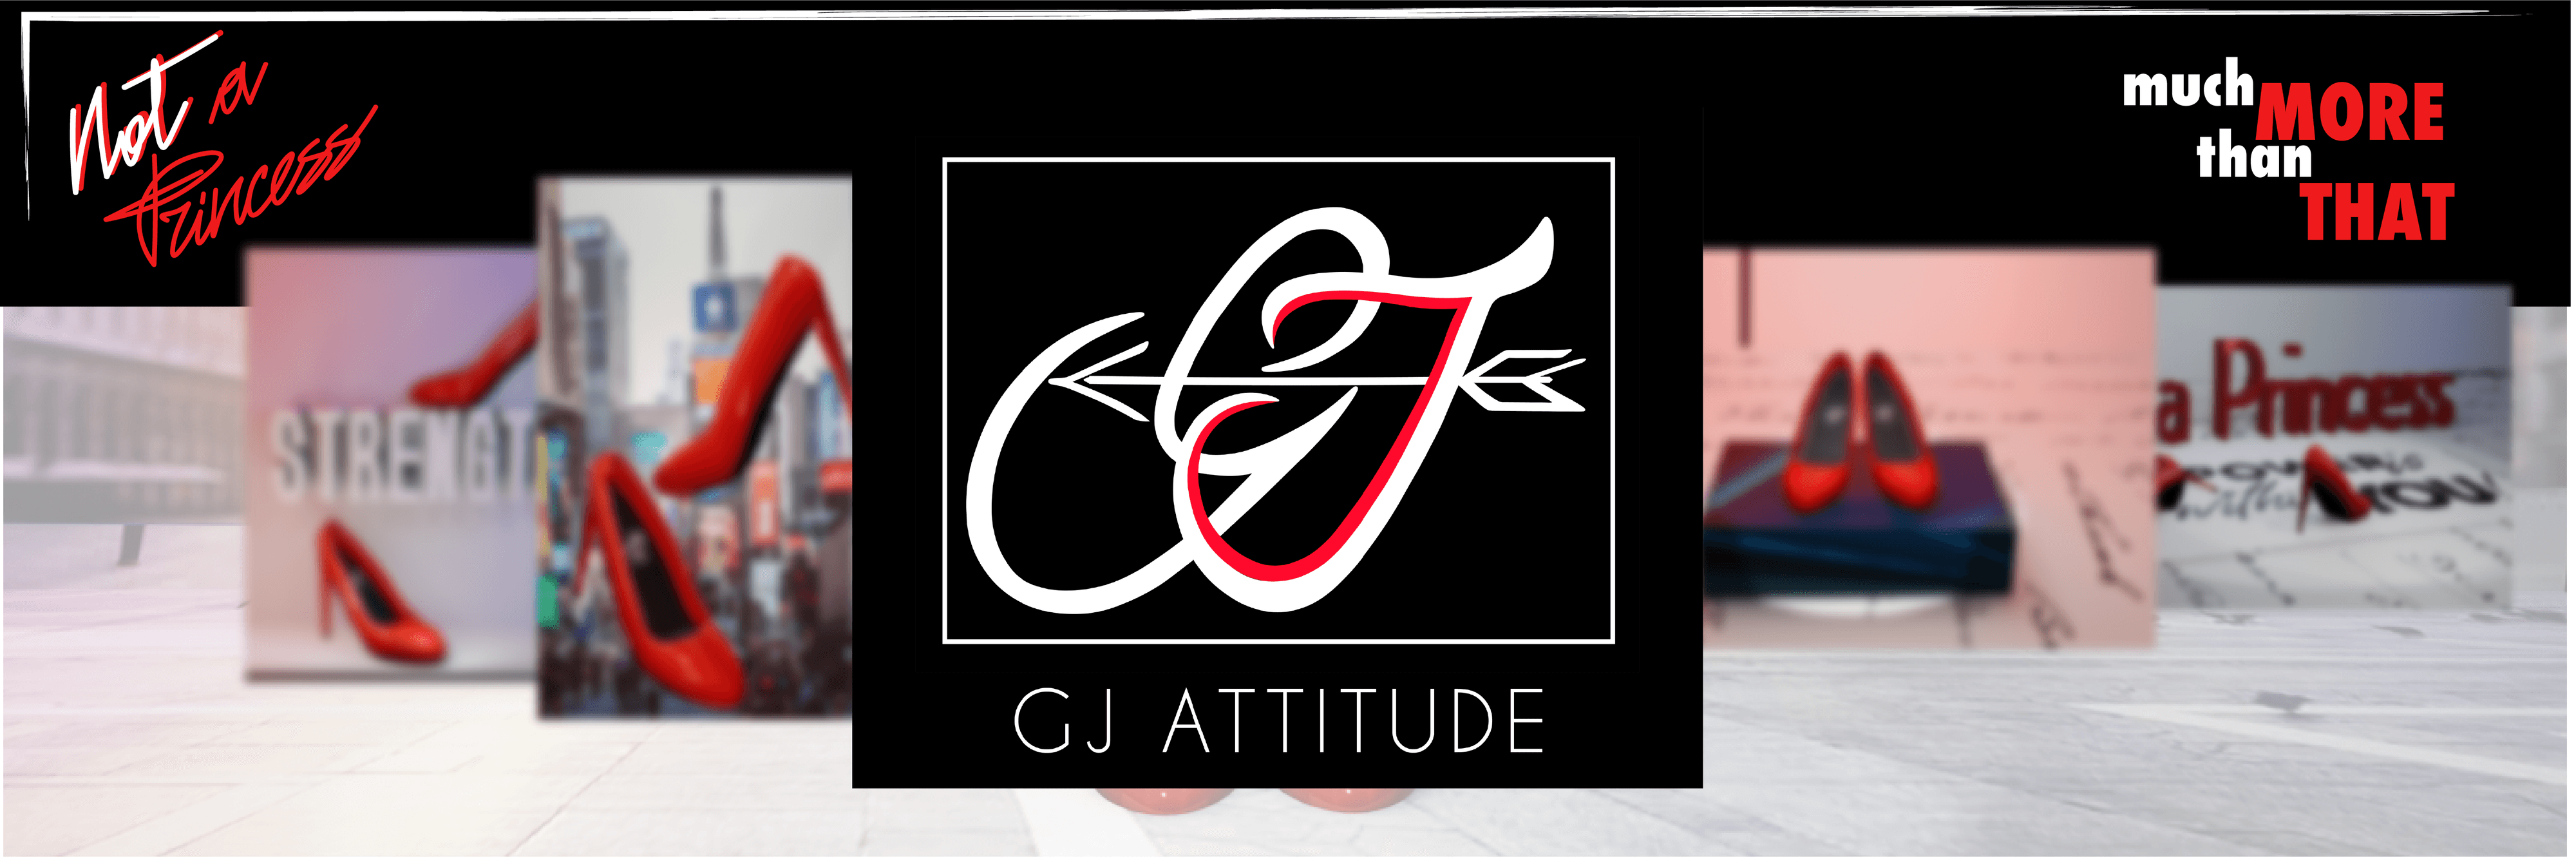 Gj_Attitude bannière